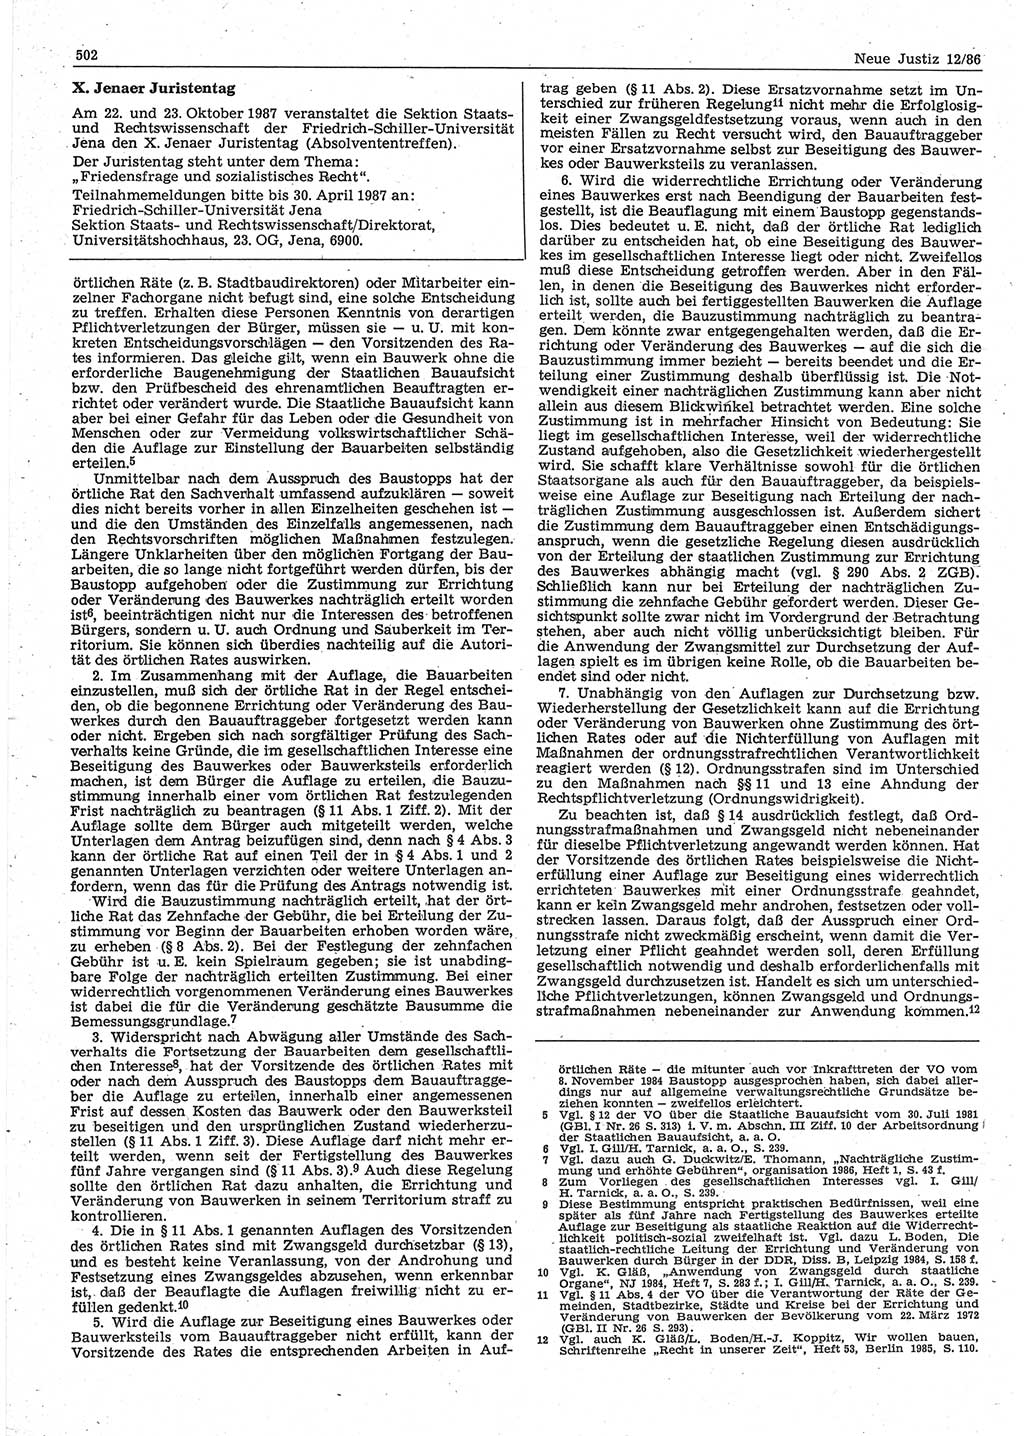 Neue Justiz (NJ), Zeitschrift für sozialistisches Recht und Gesetzlichkeit [Deutsche Demokratische Republik (DDR)], 40. Jahrgang 1986, Seite 502 (NJ DDR 1986, S. 502)